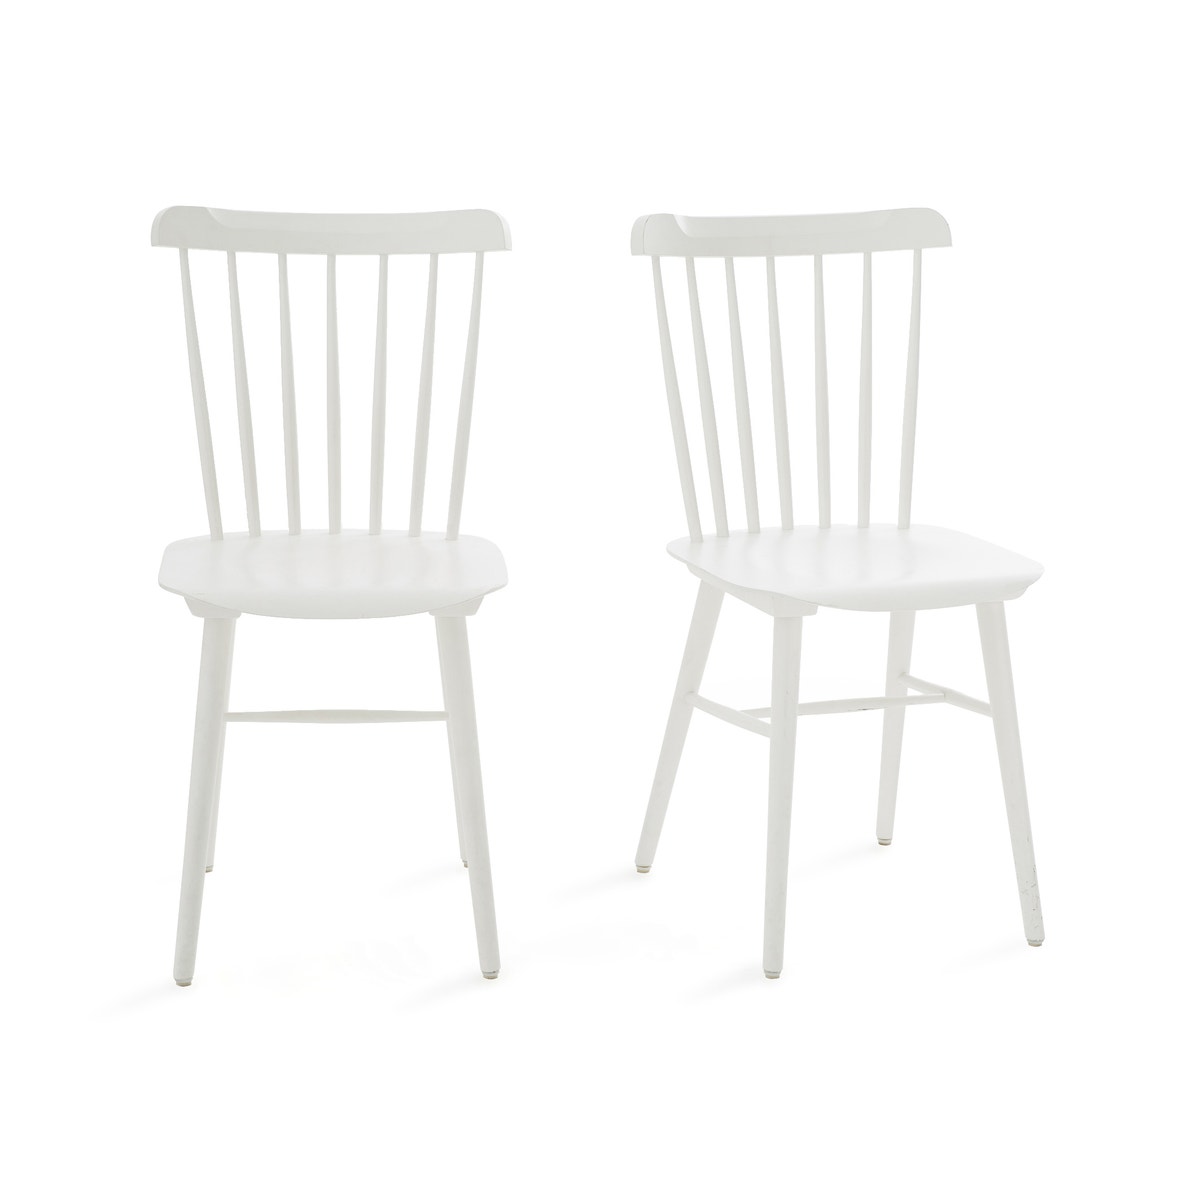 Καρέκλες Ivy (σετ των 2)